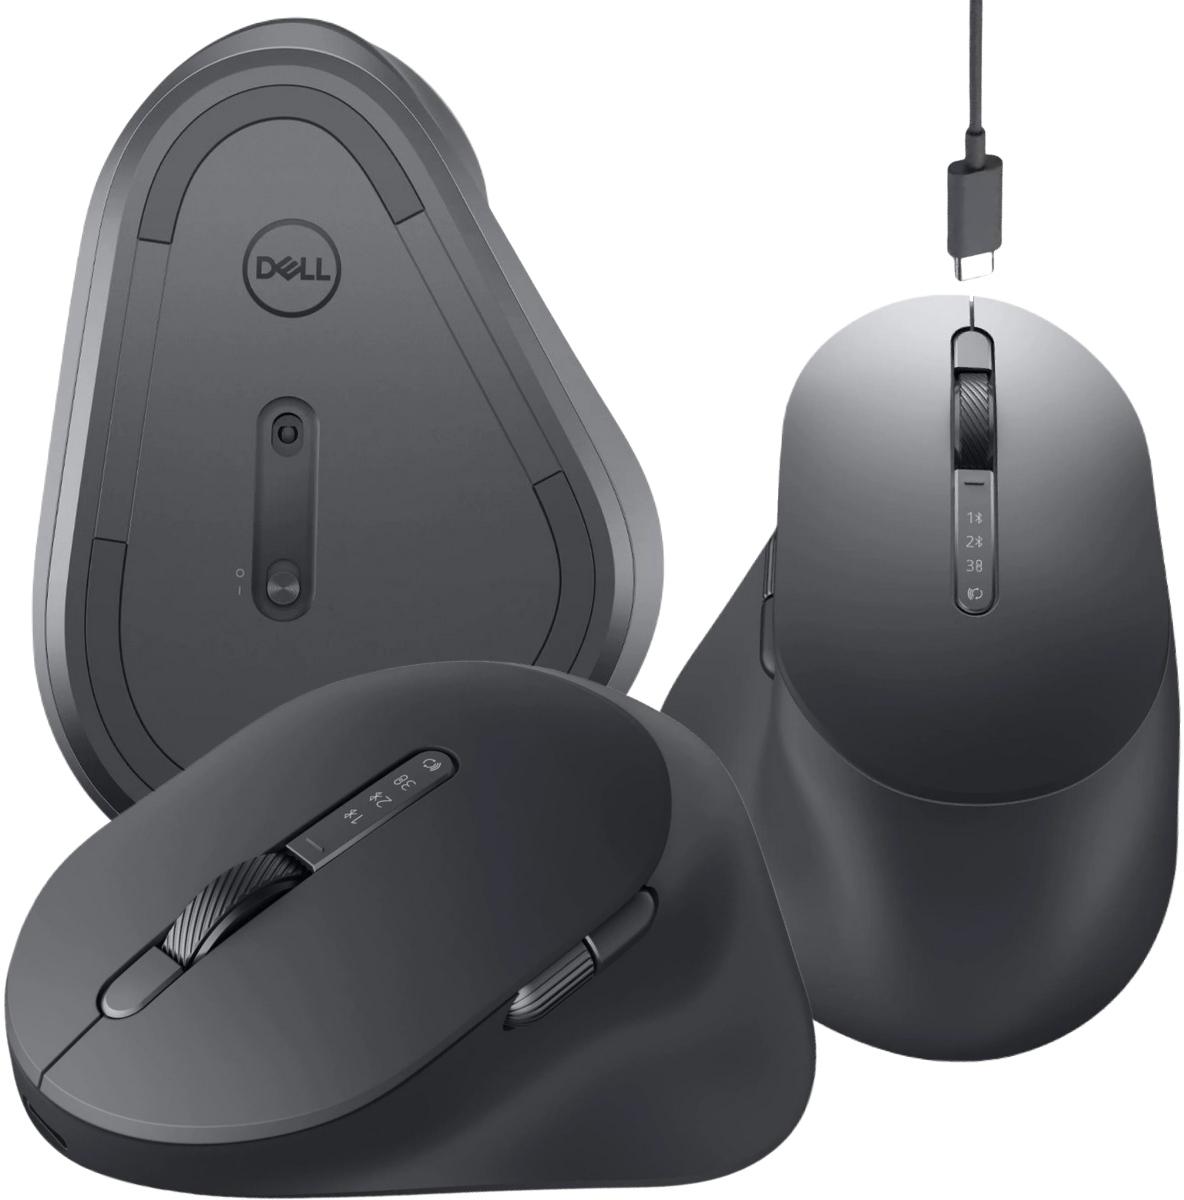 Bezprzewodowa mysz ładowalna Dell MS900 Rechargeable Multi-Device Mouse - najważniejsze cechy: